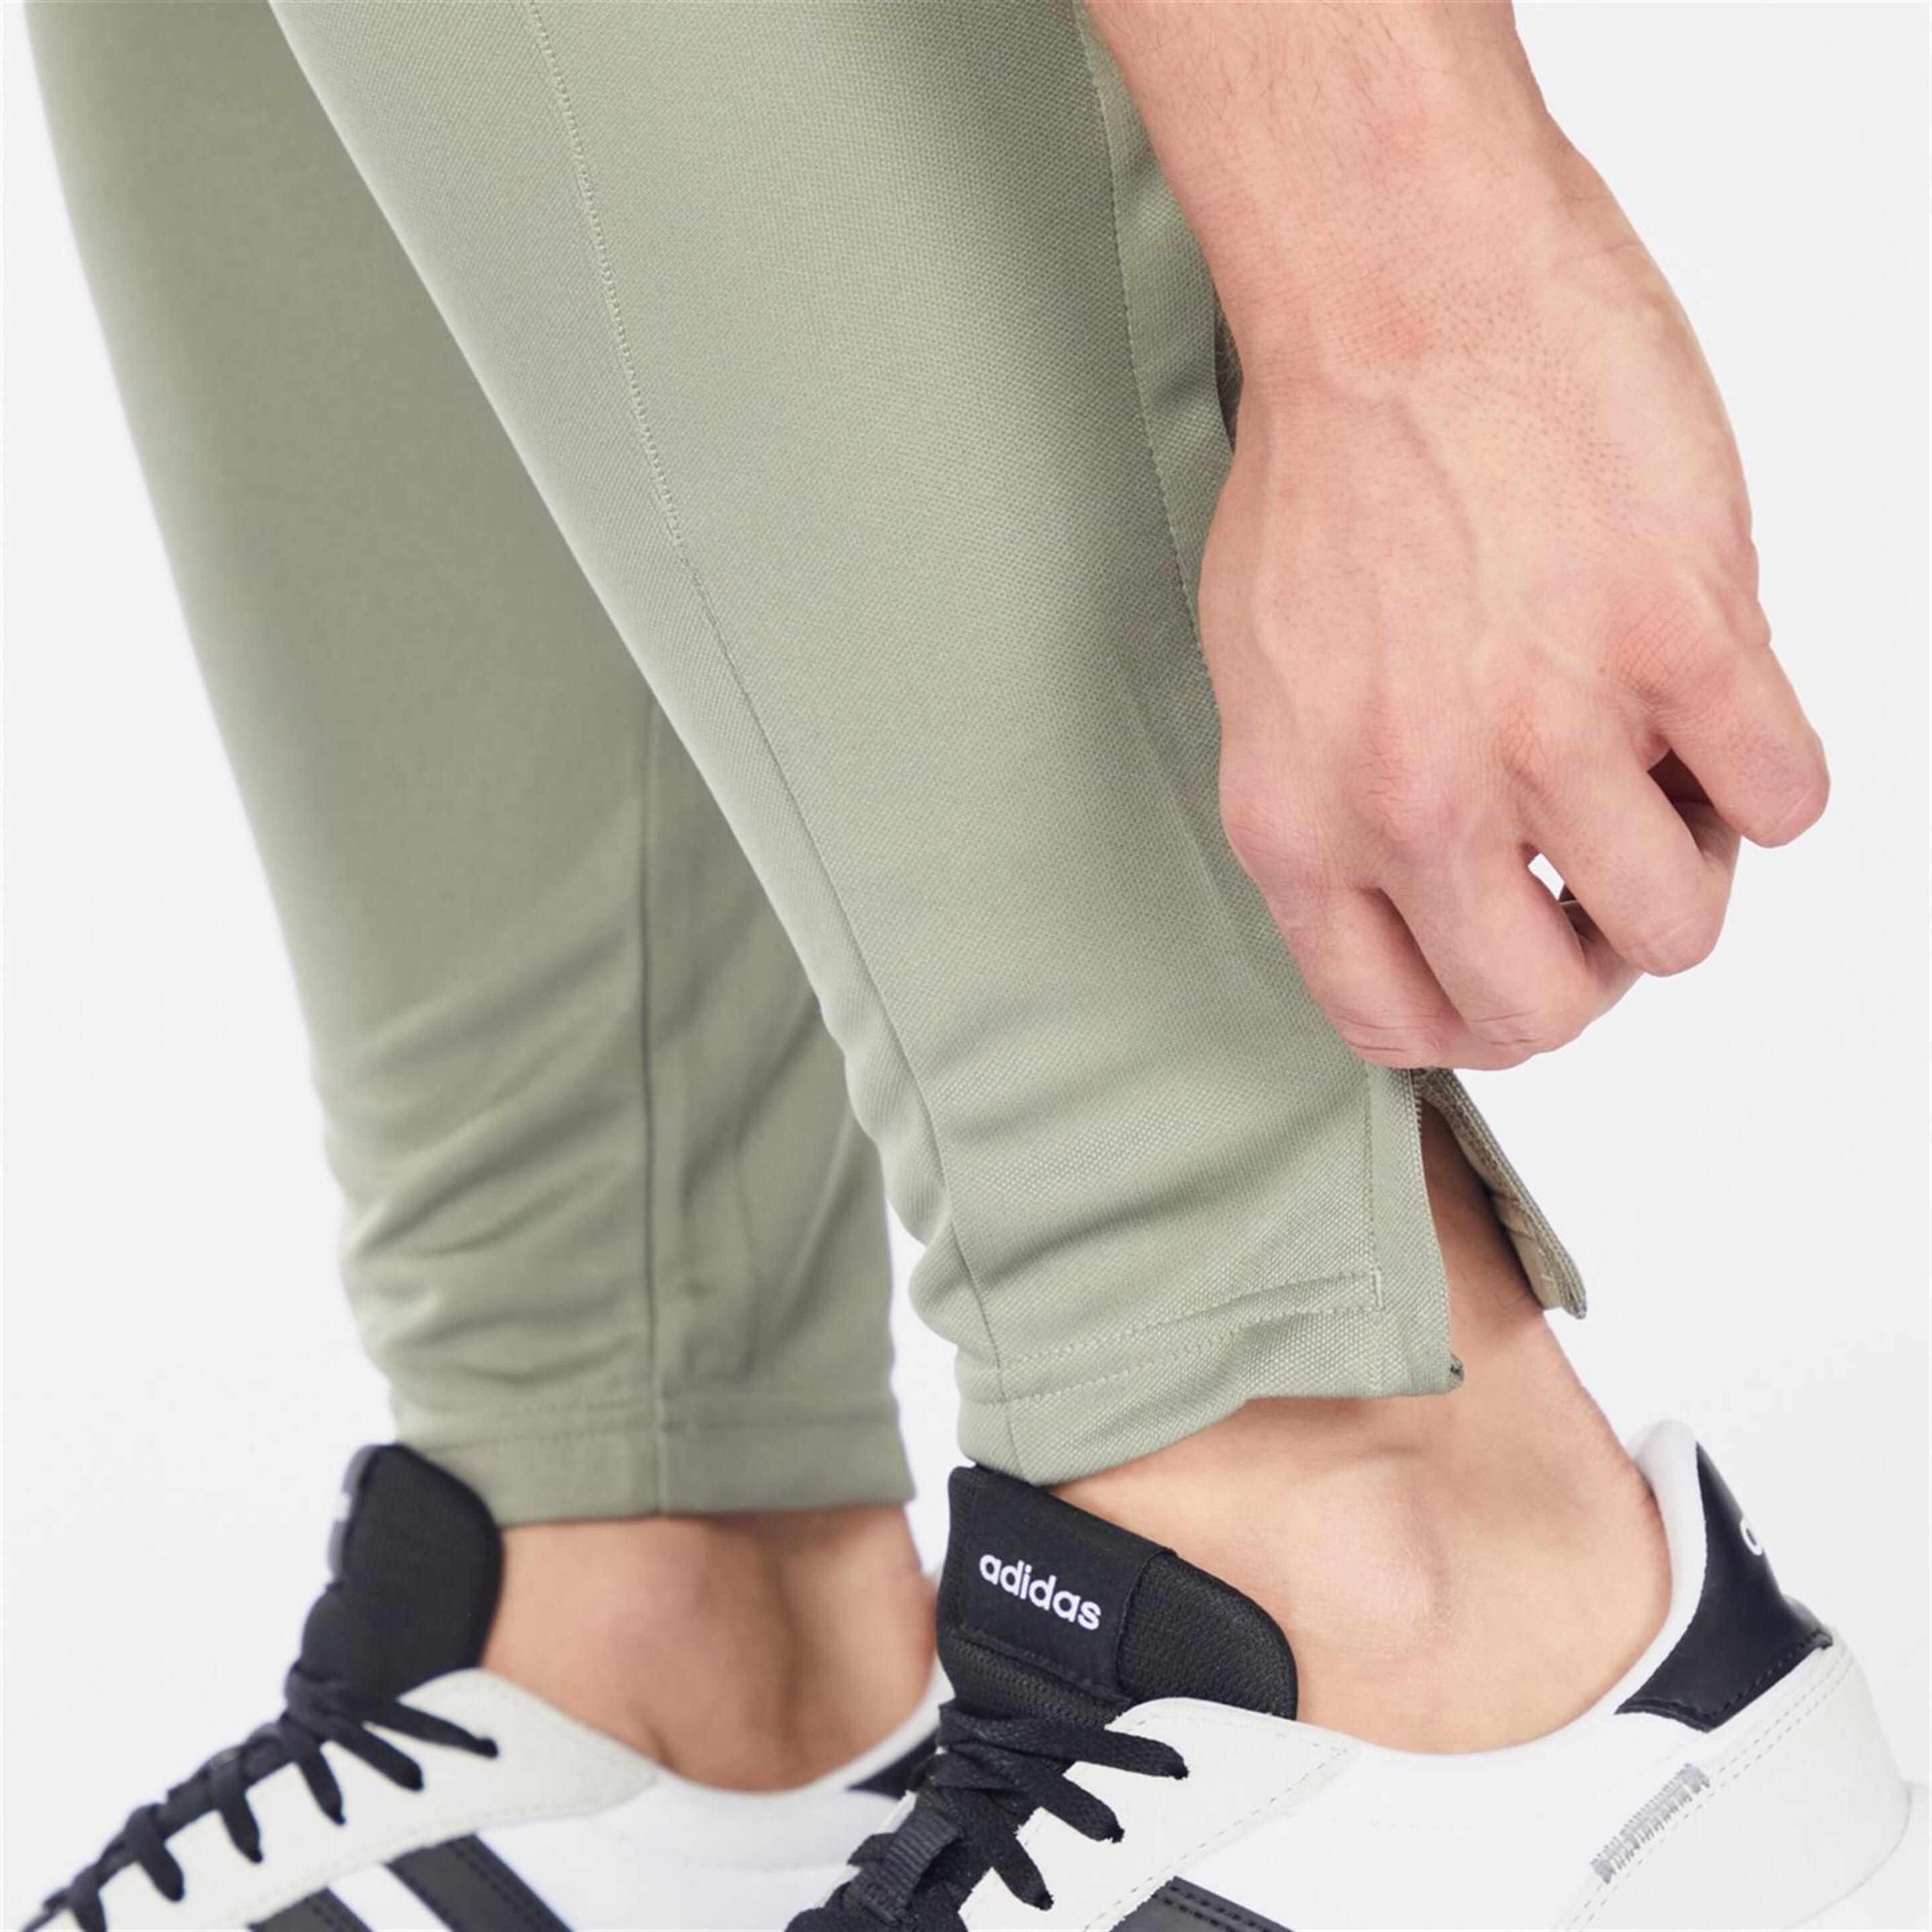 adidas Tiro - Verde - Pantalón Hombre  | Sprinter